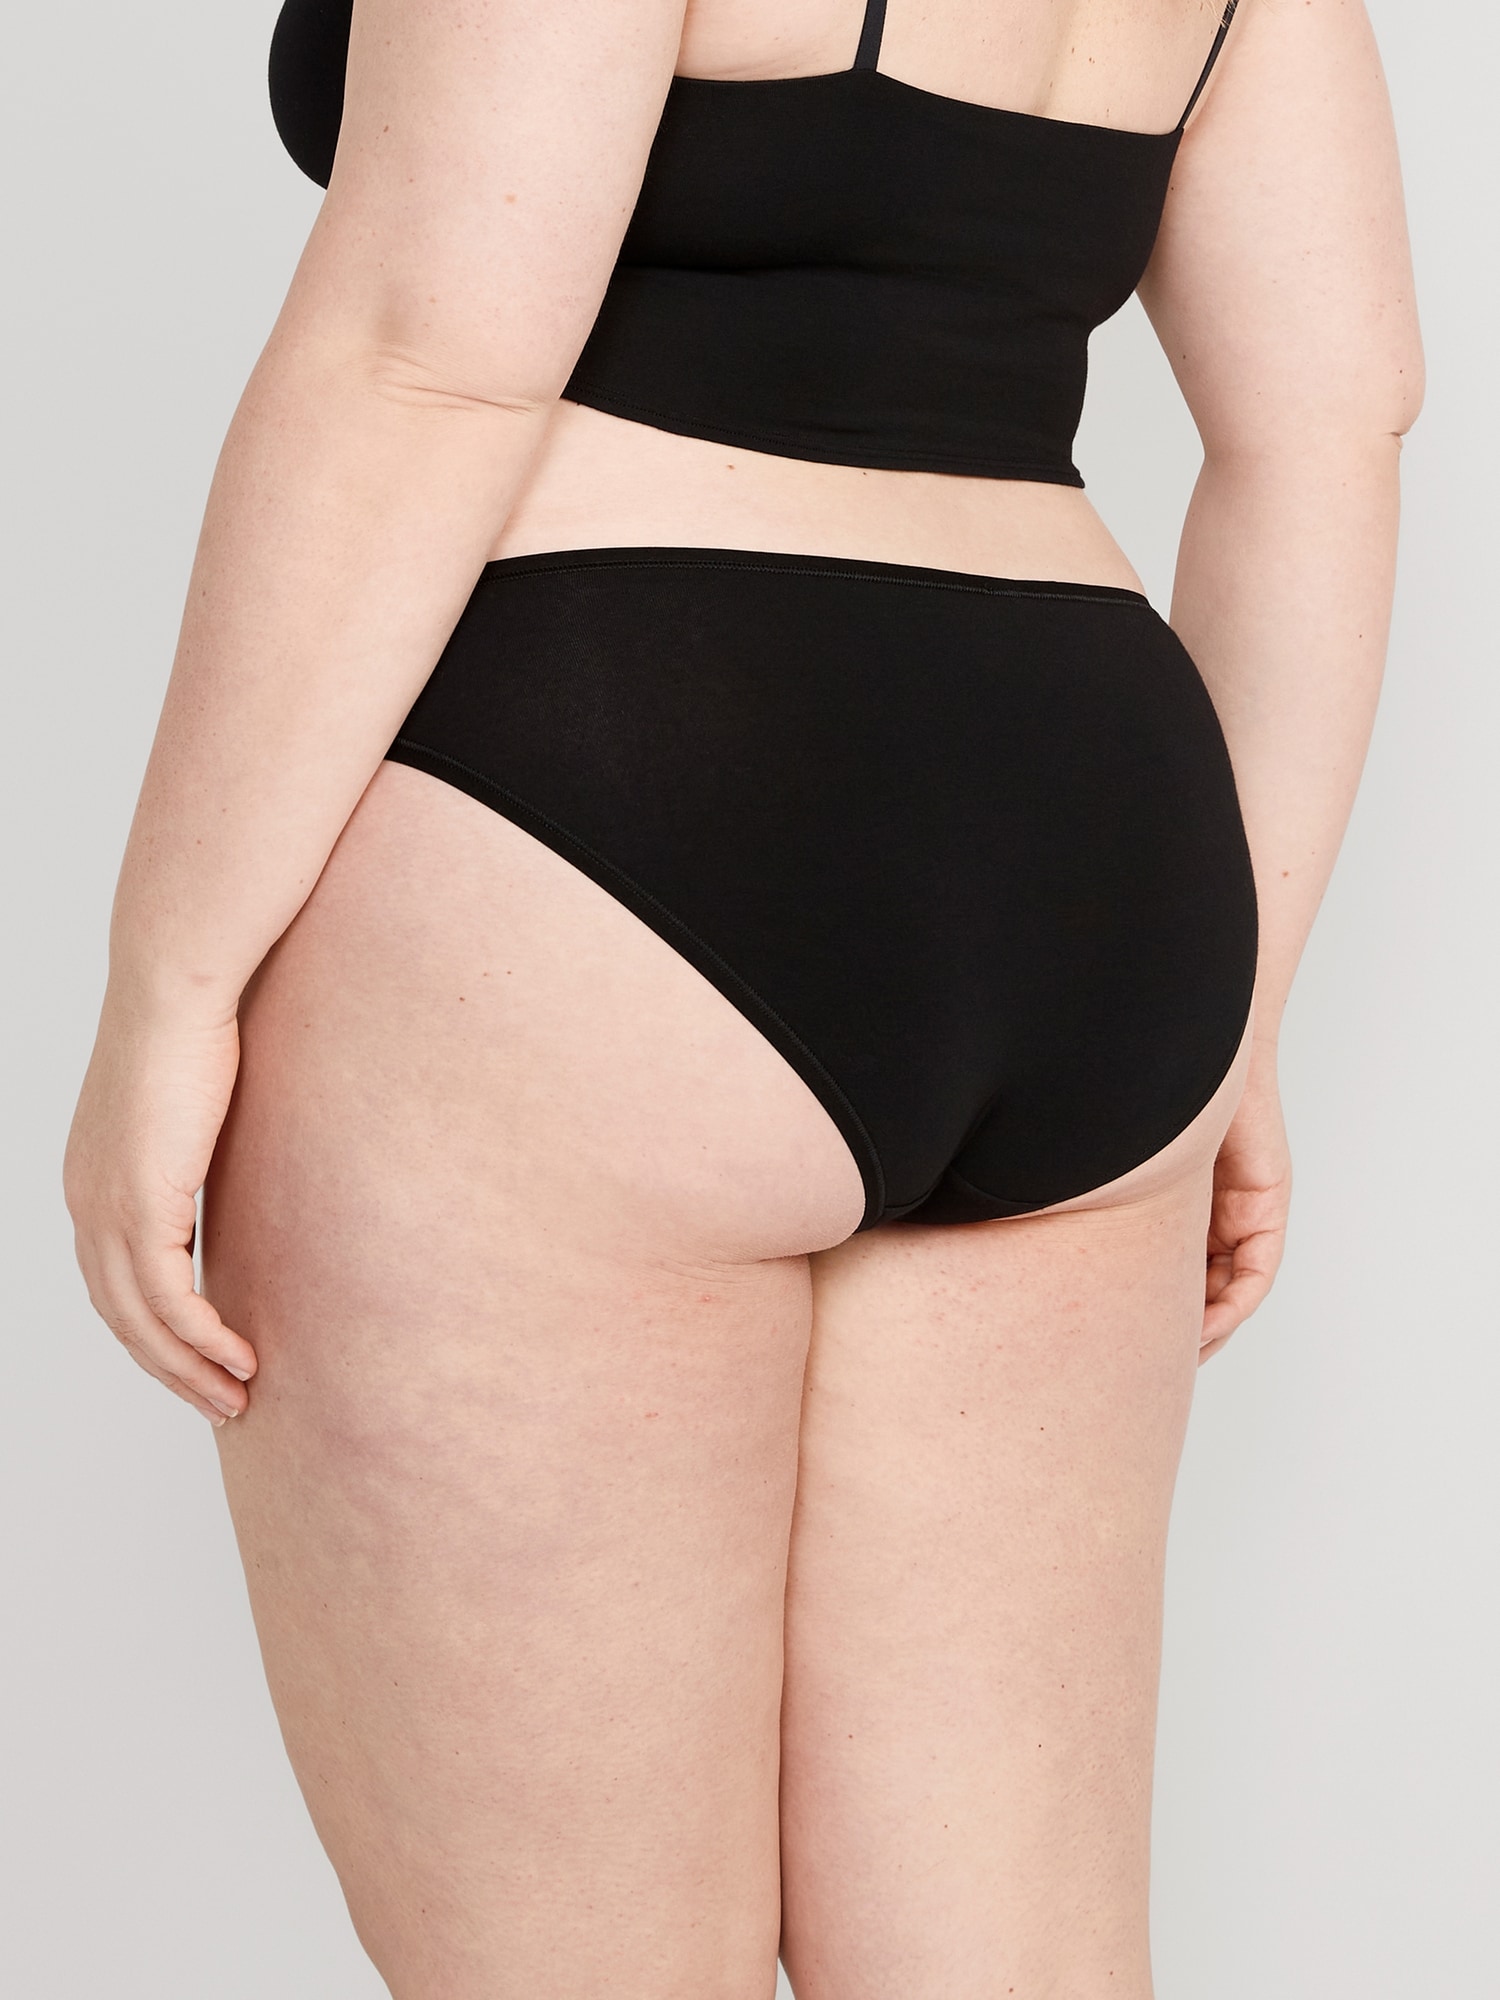 Gap Black No Show Bikini Underwear Women's Size Medium New - beyond exchange